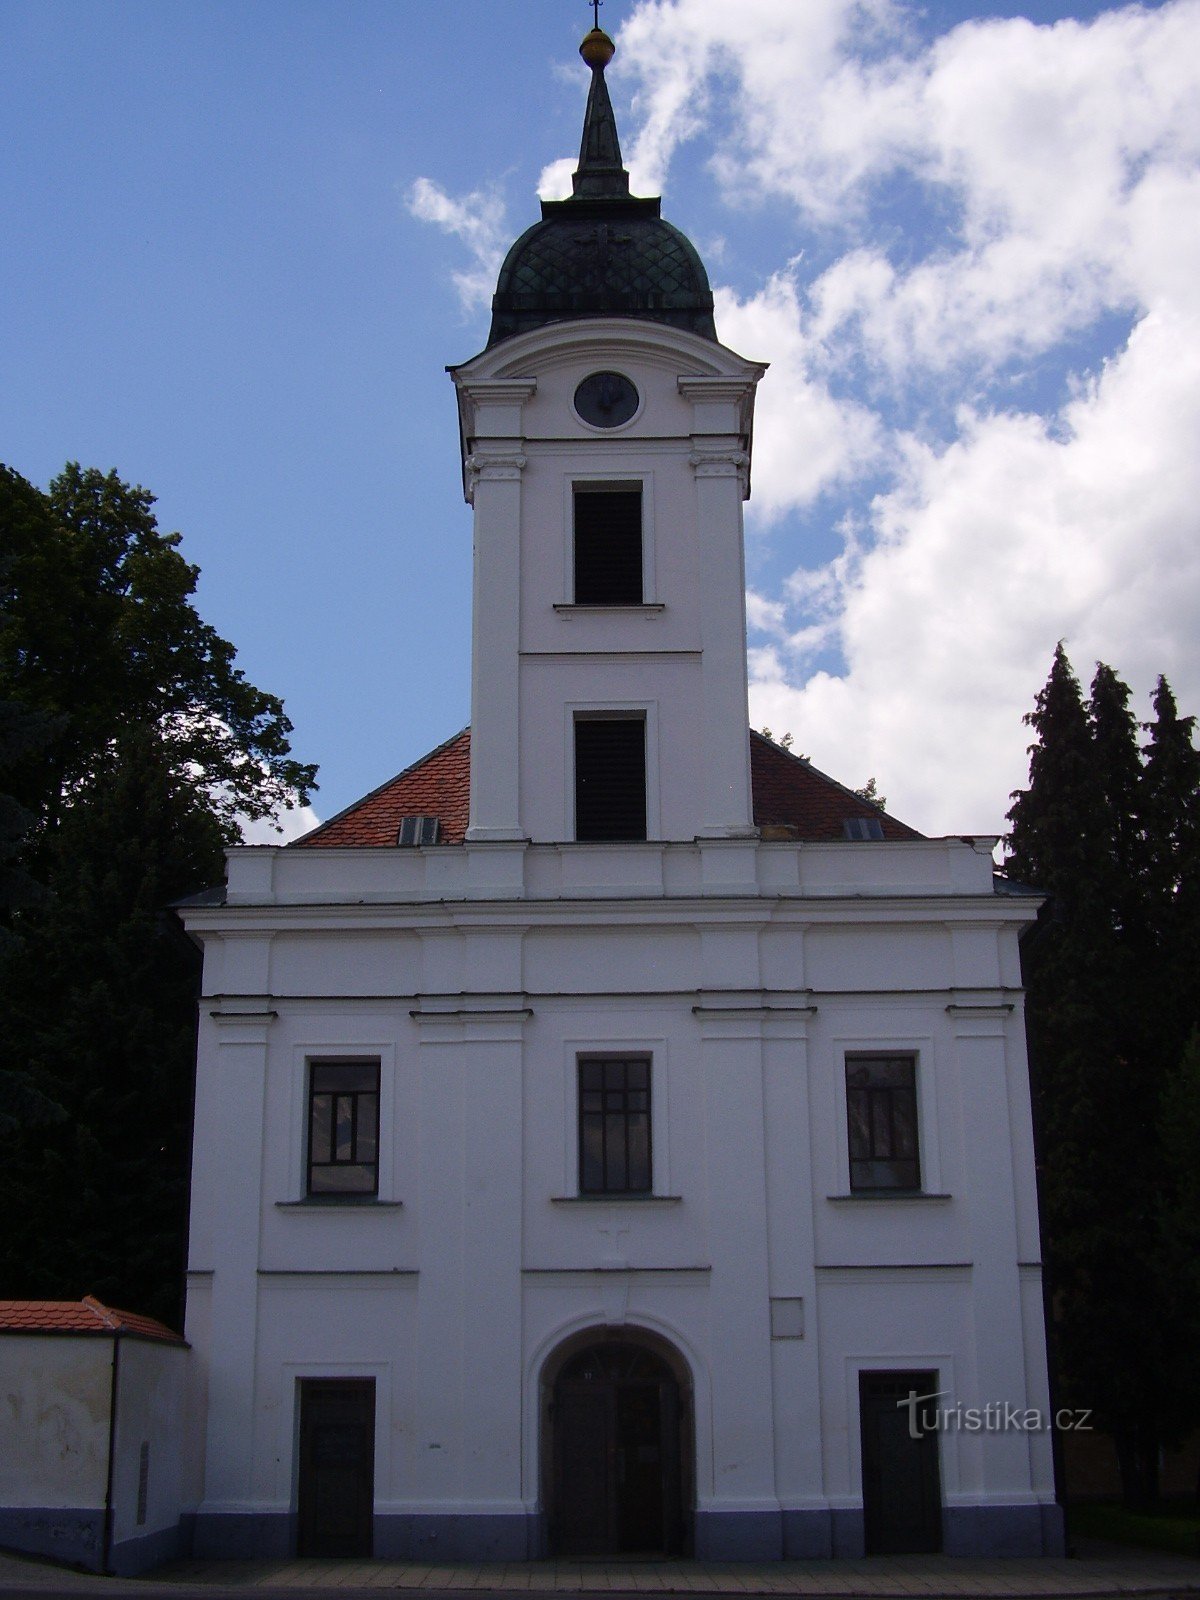 Moravec - Nhà thờ Tìm kiếm và Suy tôn Thánh giá